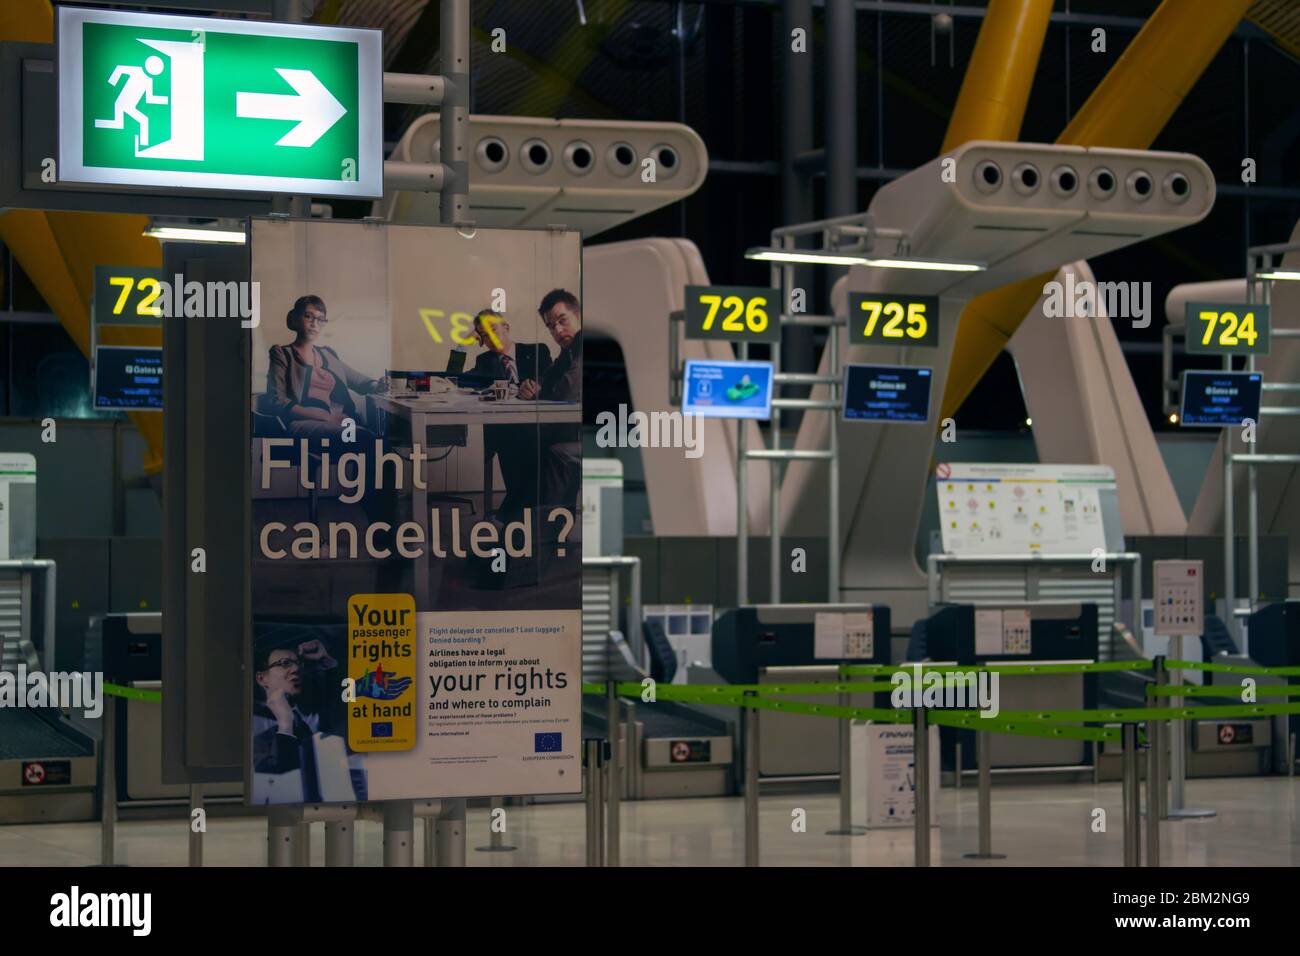 FLUGHAFEN MADRID-BARAJAS, SPANIEN - MÄRZ 2020: Quarantänekonzept. Leerer Flughafen als die Pandemie des Coronavirus in Europa einschlägt. Flugstornierungszeichen Stockfoto